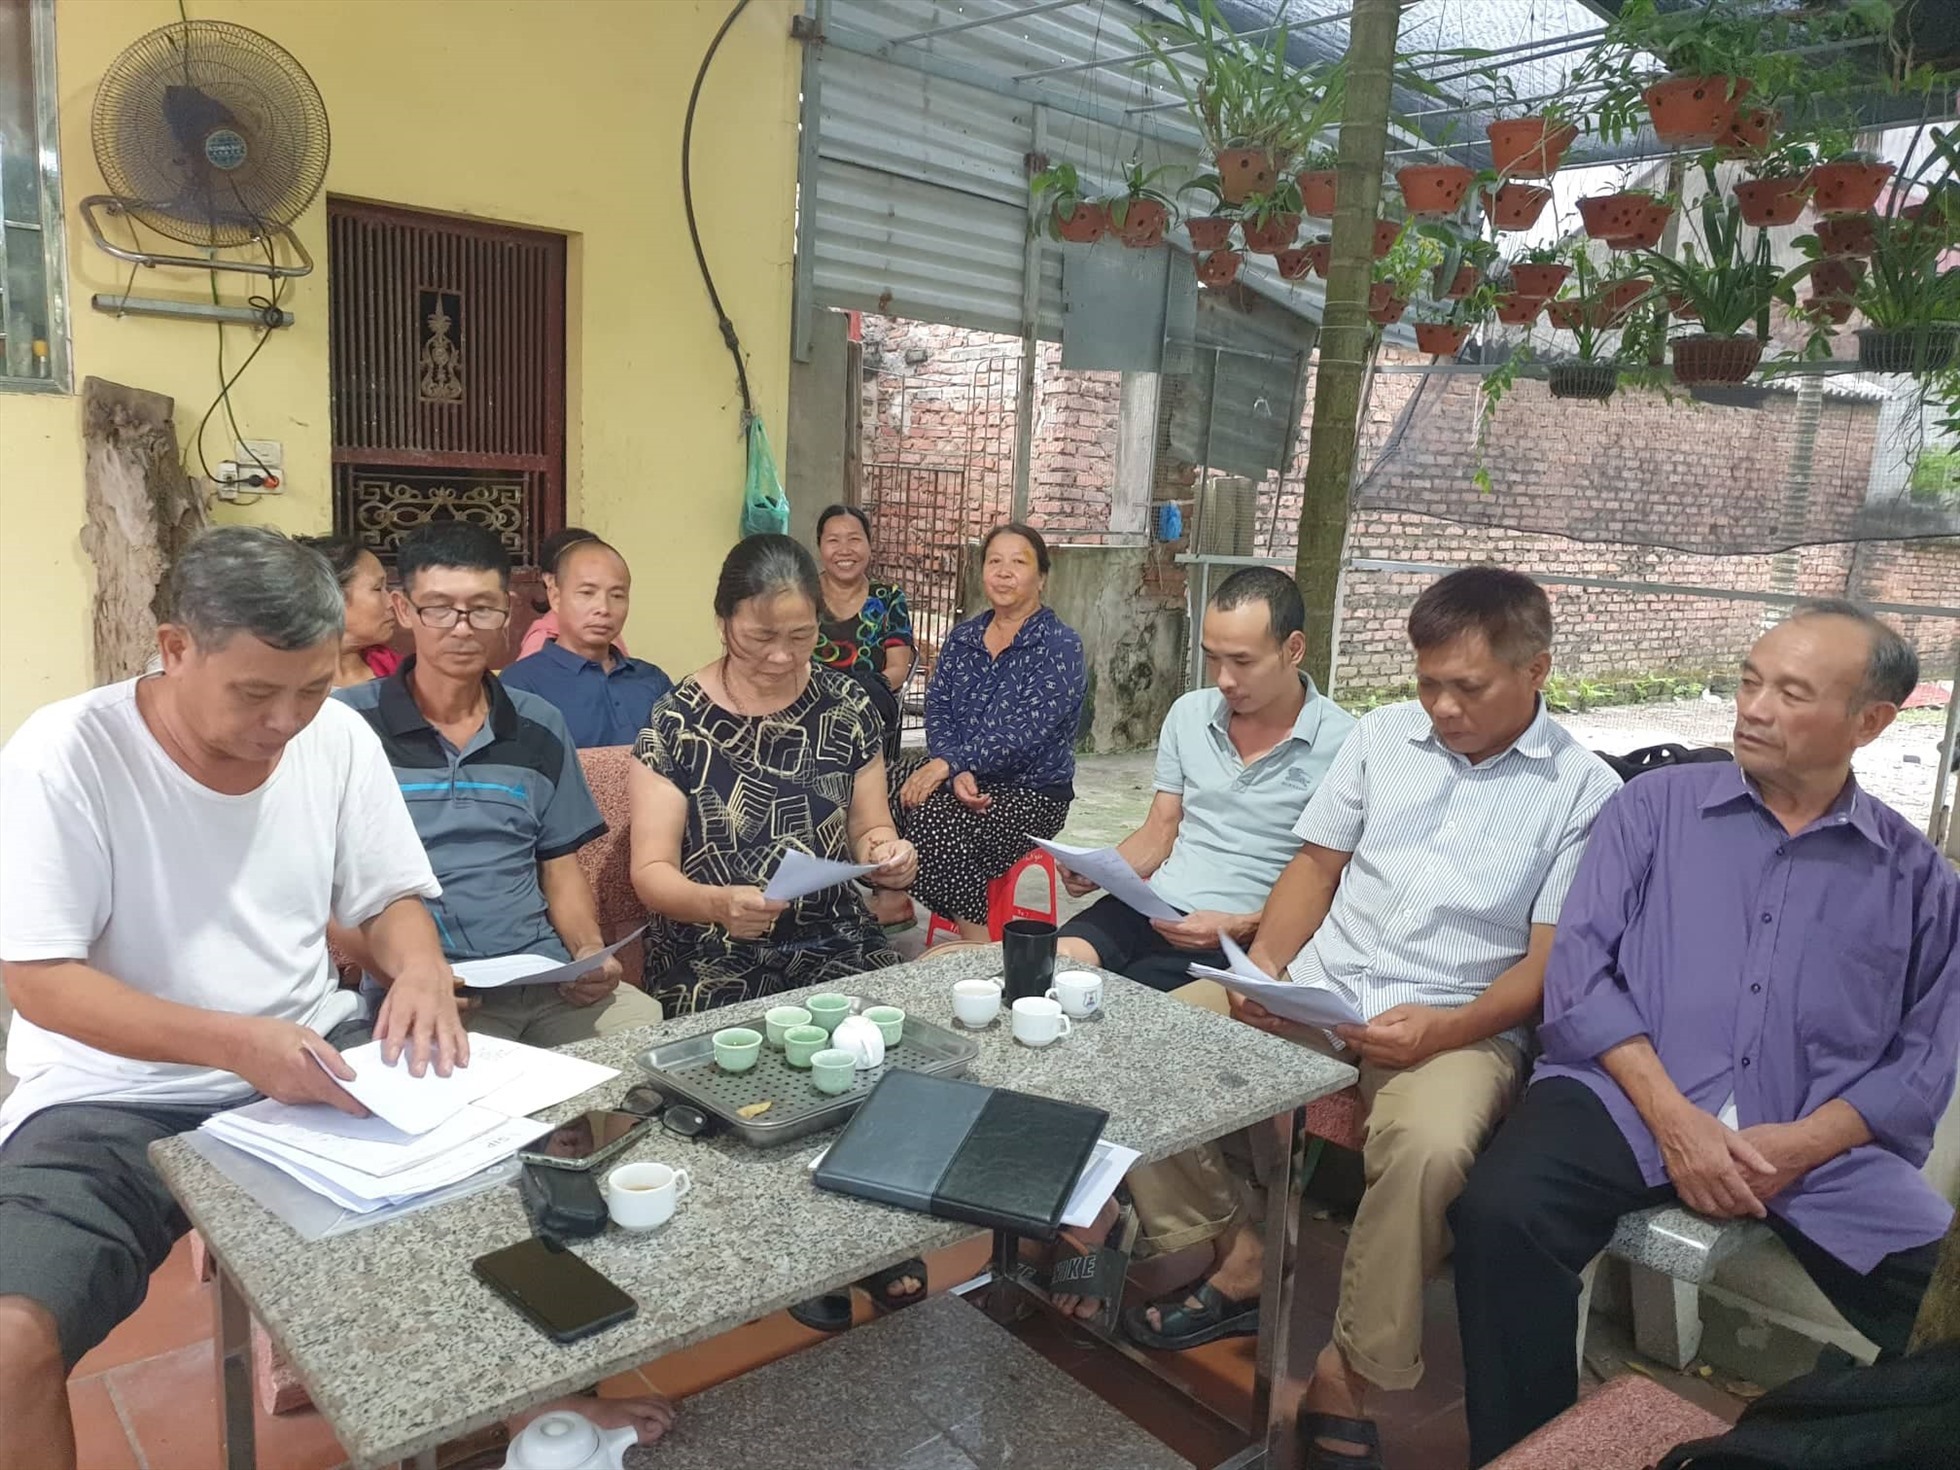 Nhiều hộ dân ở thôn Trác Bút cho rằng quy trình thu hồi đất phục vụ dự án KCN Vsip 2 trái quy định của pháp luật. Ảnh: Trần Tuấn.